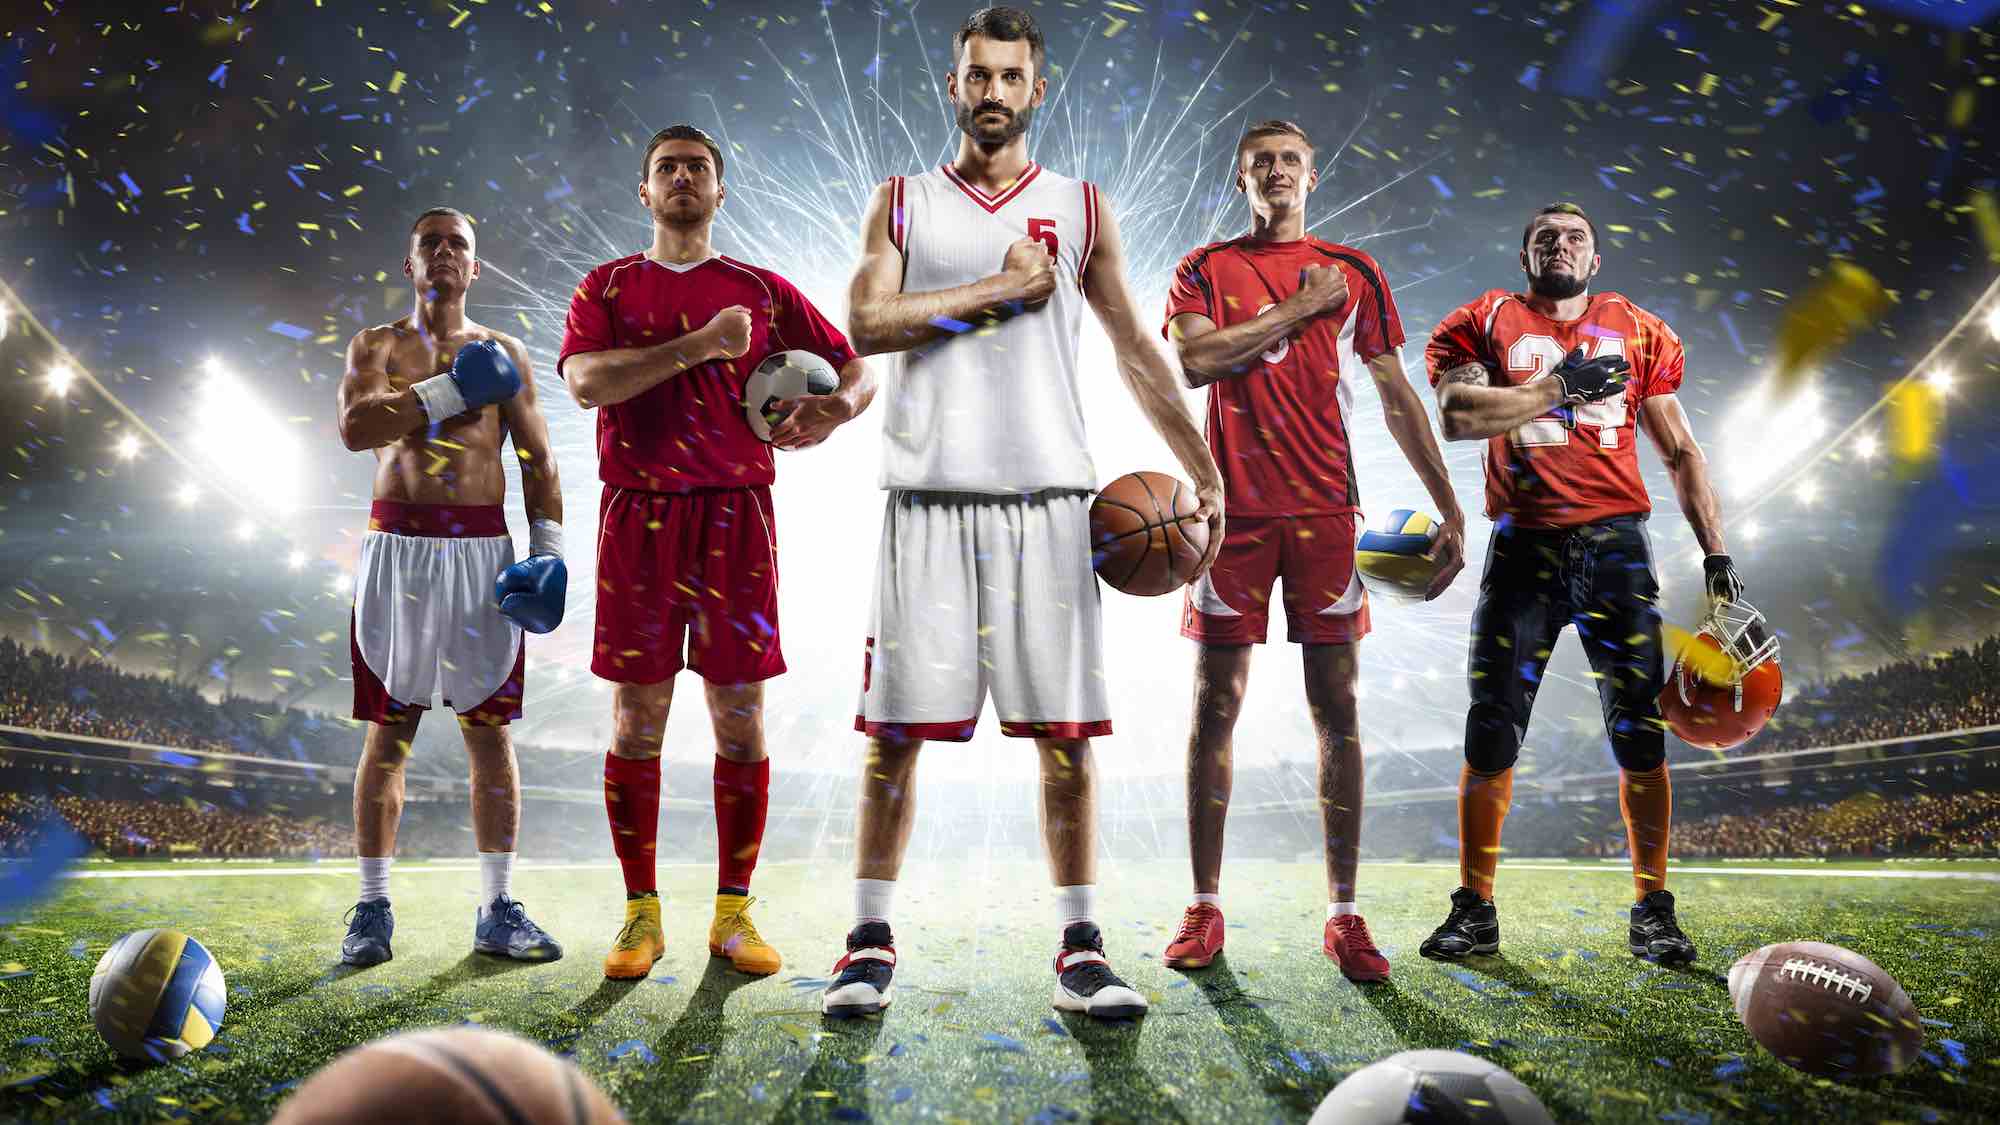 Großes Bild mit Sportlern verschiedener Sportarten. Hintergrundbild der Überschrift Impressum.